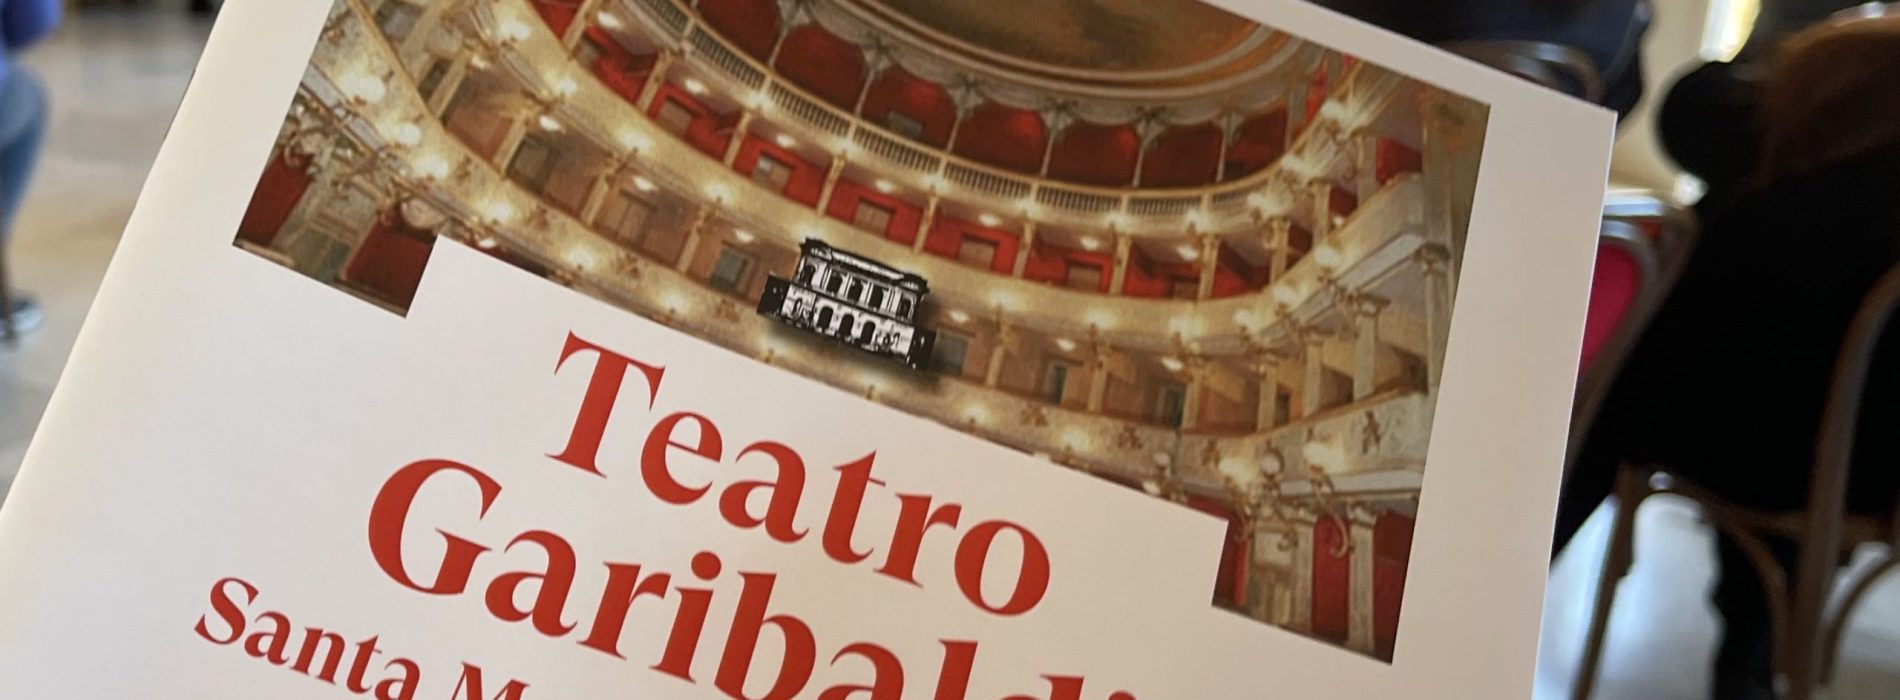 Teatro Garibaldi, si alza il sipario. Al via la nuova stagione